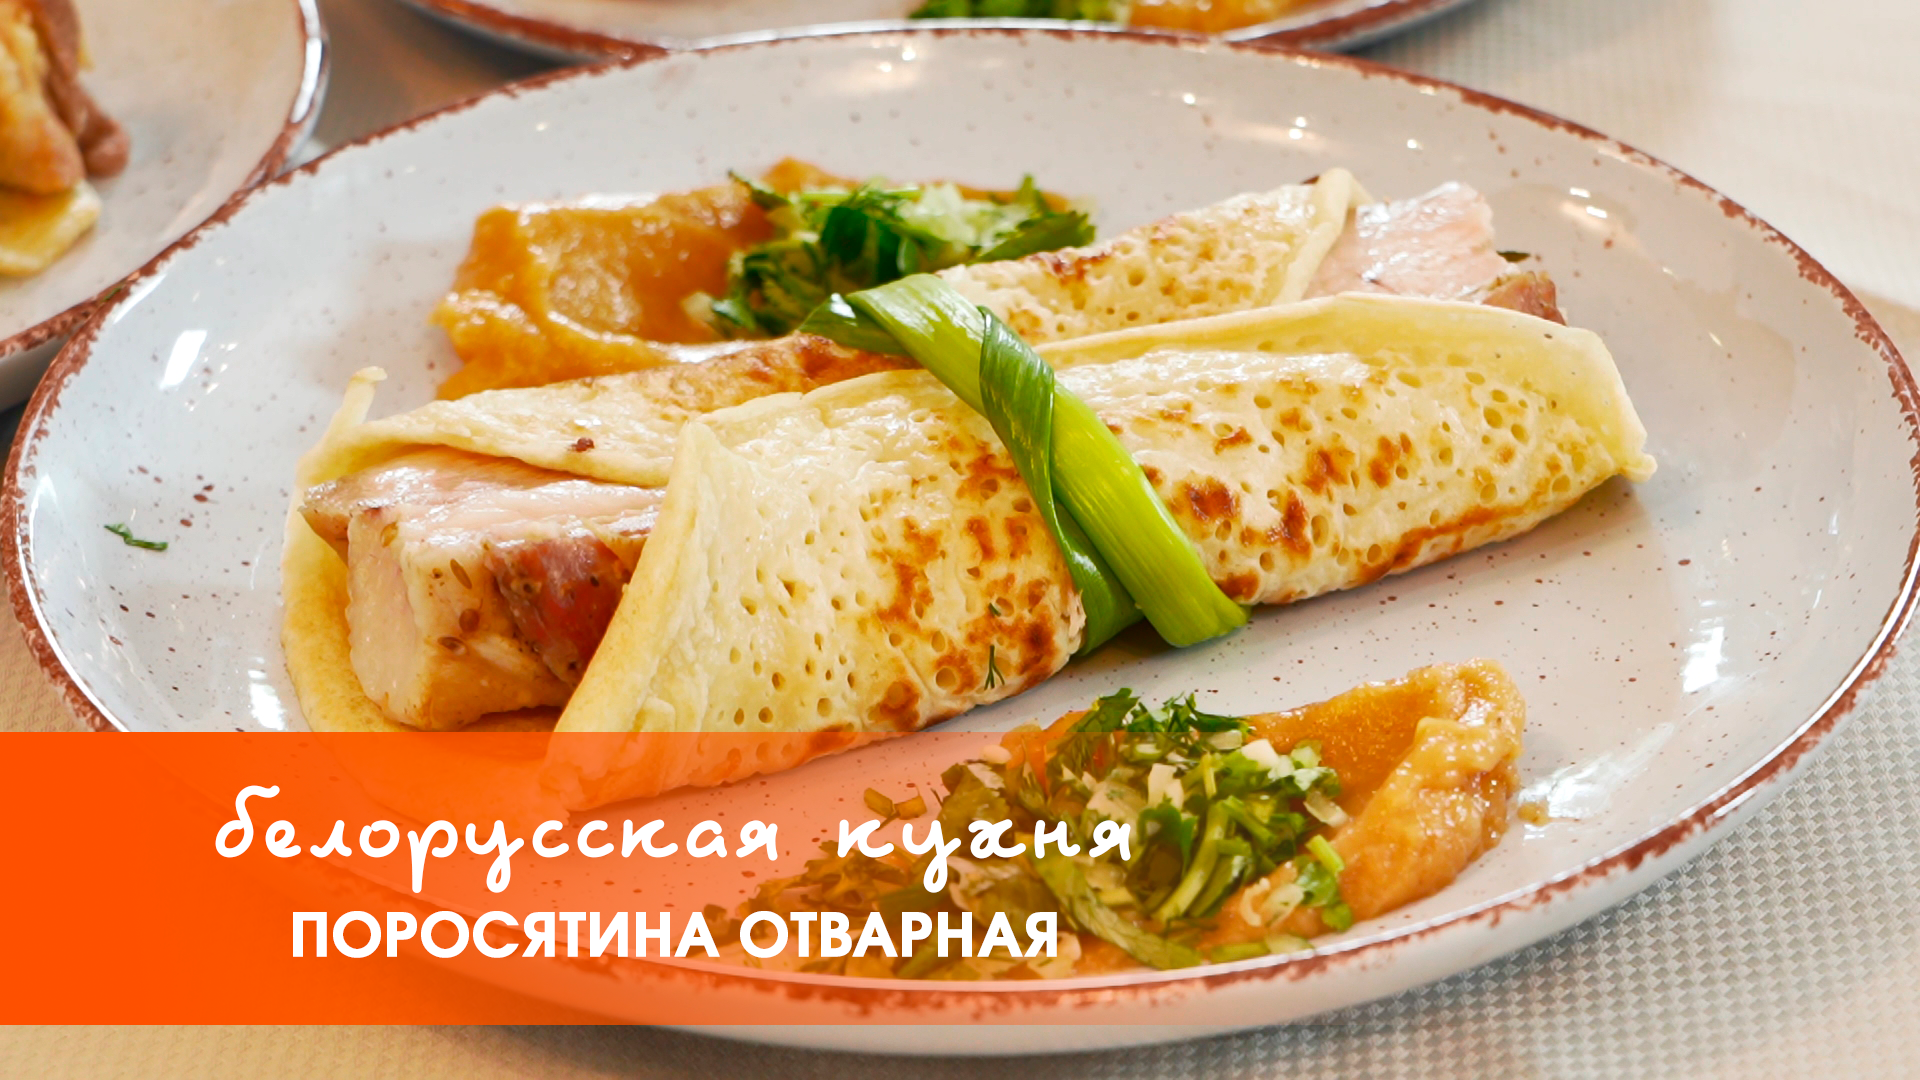 Белорусская кухня: поросятина отварная